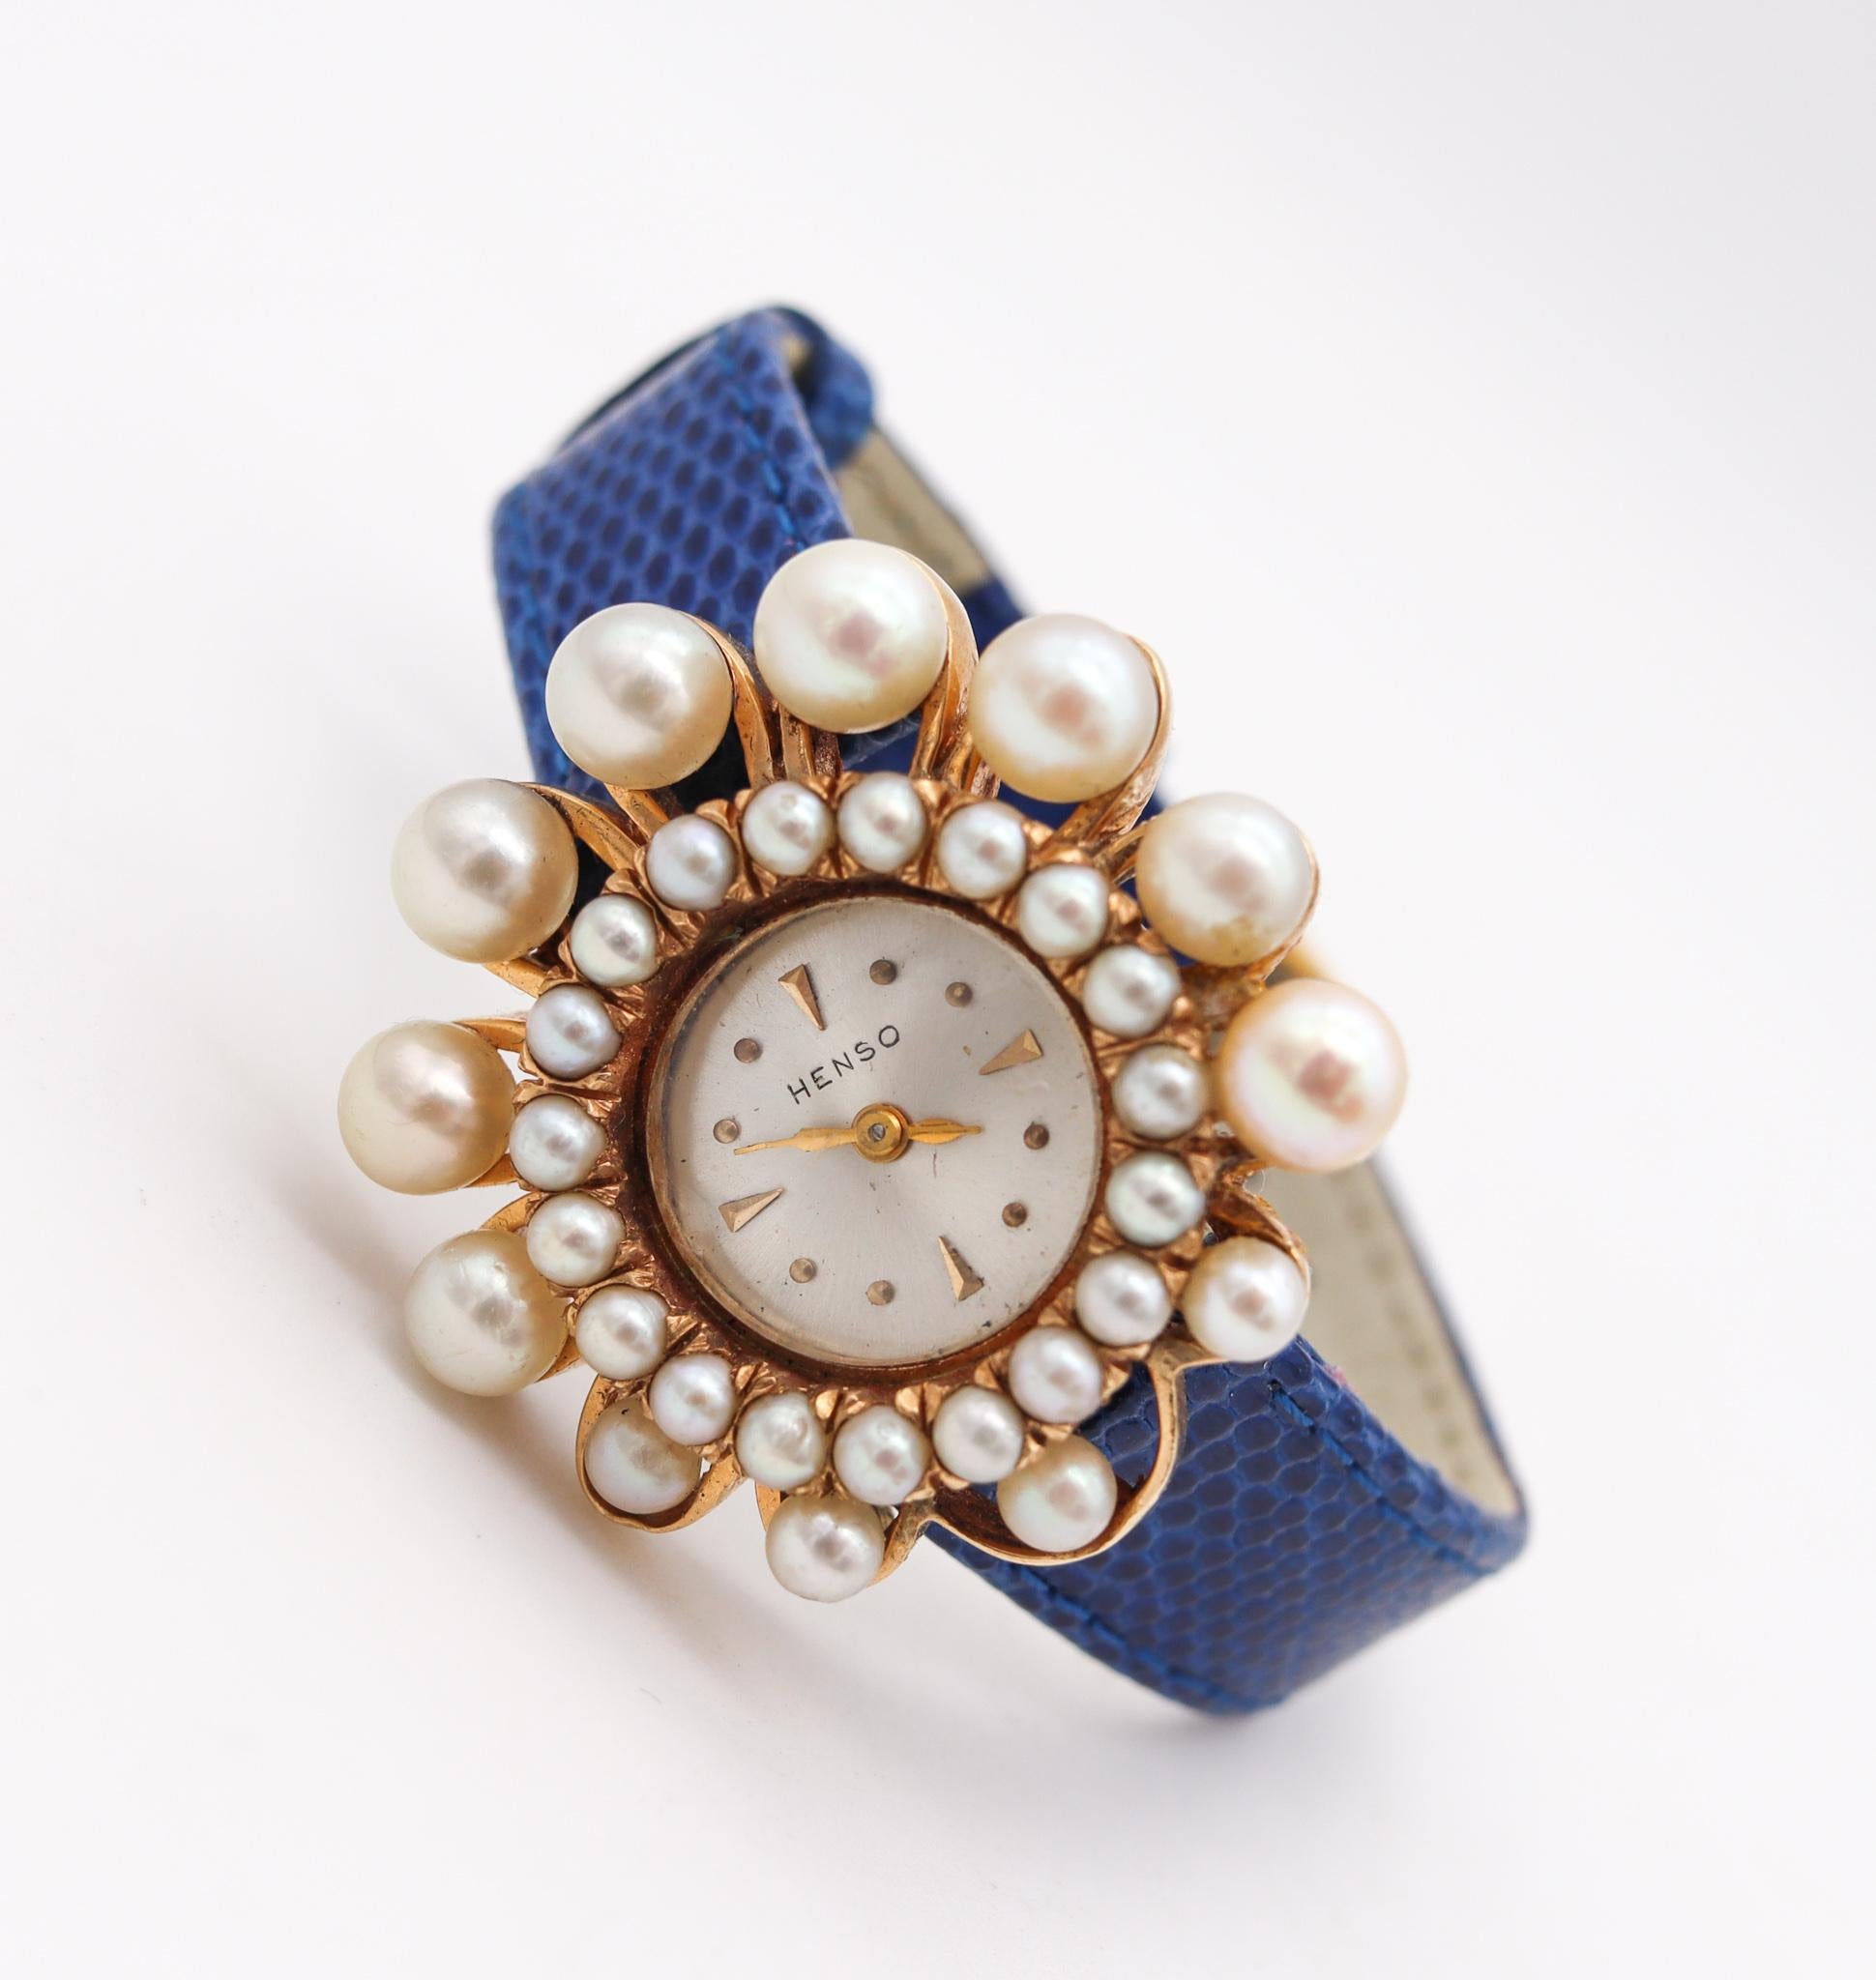 Modernistische Retro-Armbanduhr, entworfen von der Henso Watch Co.

Sehr elegante Damenarmbanduhr, die in der Mitte des Jahrhunderts von der Henso Watch Co. Dieses Stück hat einen sehr tollen Look mit großer Anziehungskraft und wurde in massivem